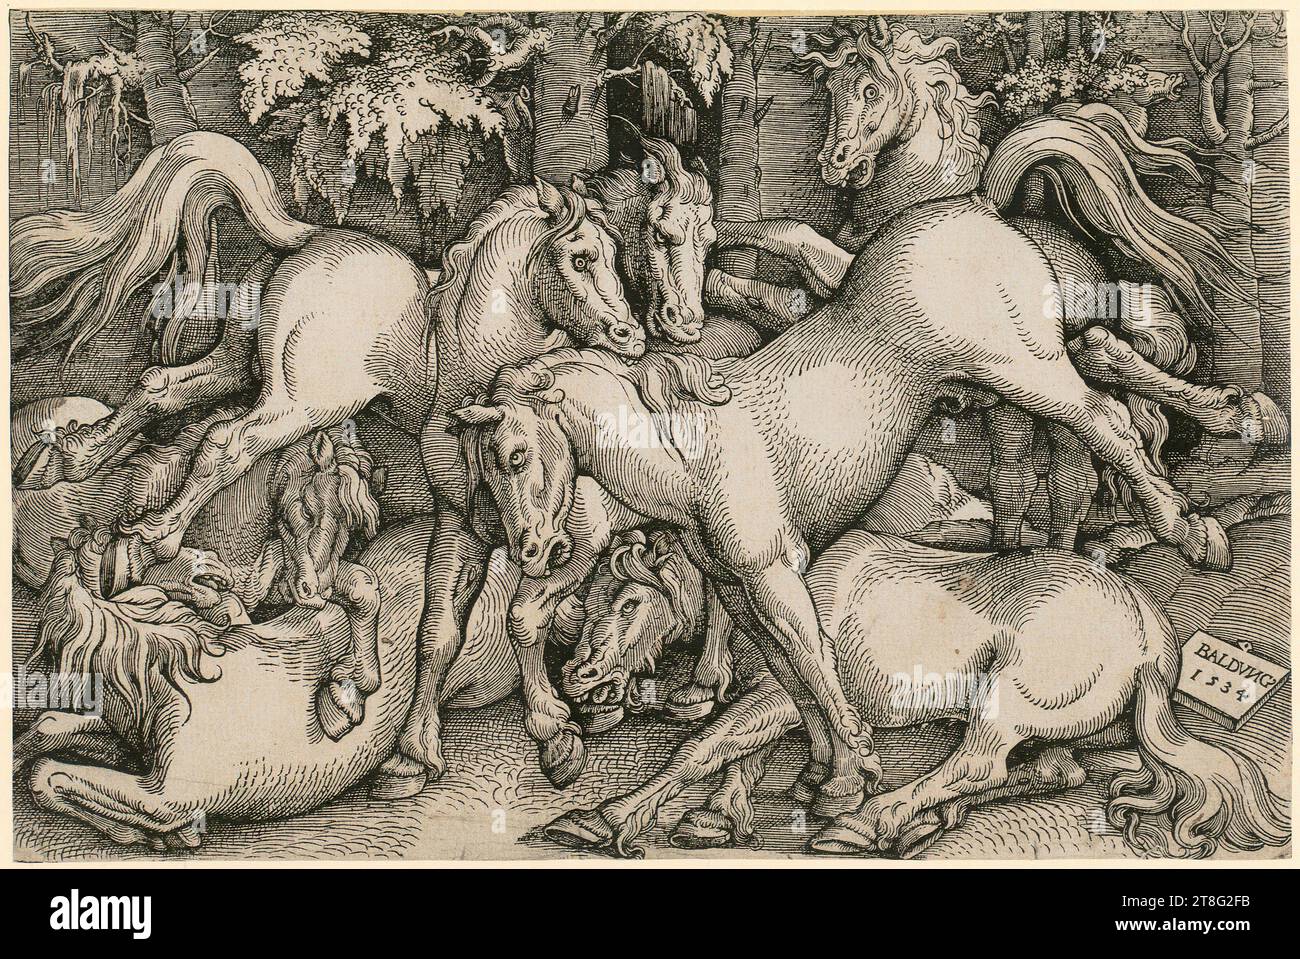 Hans Baldung Grien (1484, 1485 - 1545), stalloni combattenti in mezzo a un gruppo di cavalli selvatici nella foresta, data di stampa: 1534, taglio del legno, dimensione foglio: 21,2 x 32,0 cm, firmato e datato in basso a destra sul pannello 'BALDVNG, 1534 Foto Stock